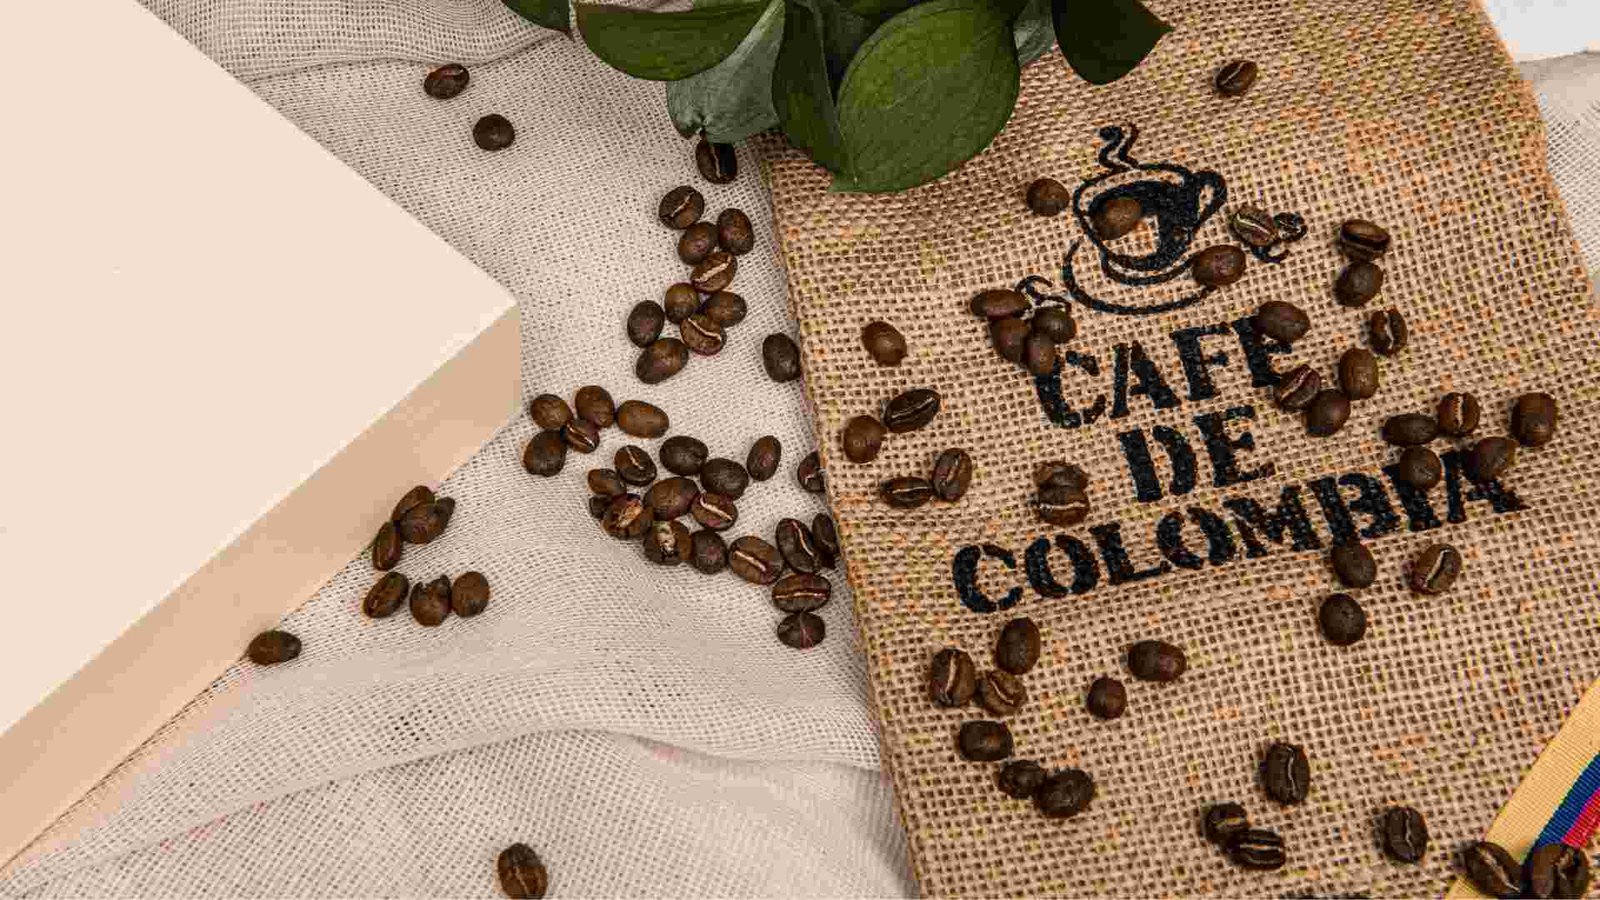 Cafés colombianos en España: imagen de saco de café colombiano